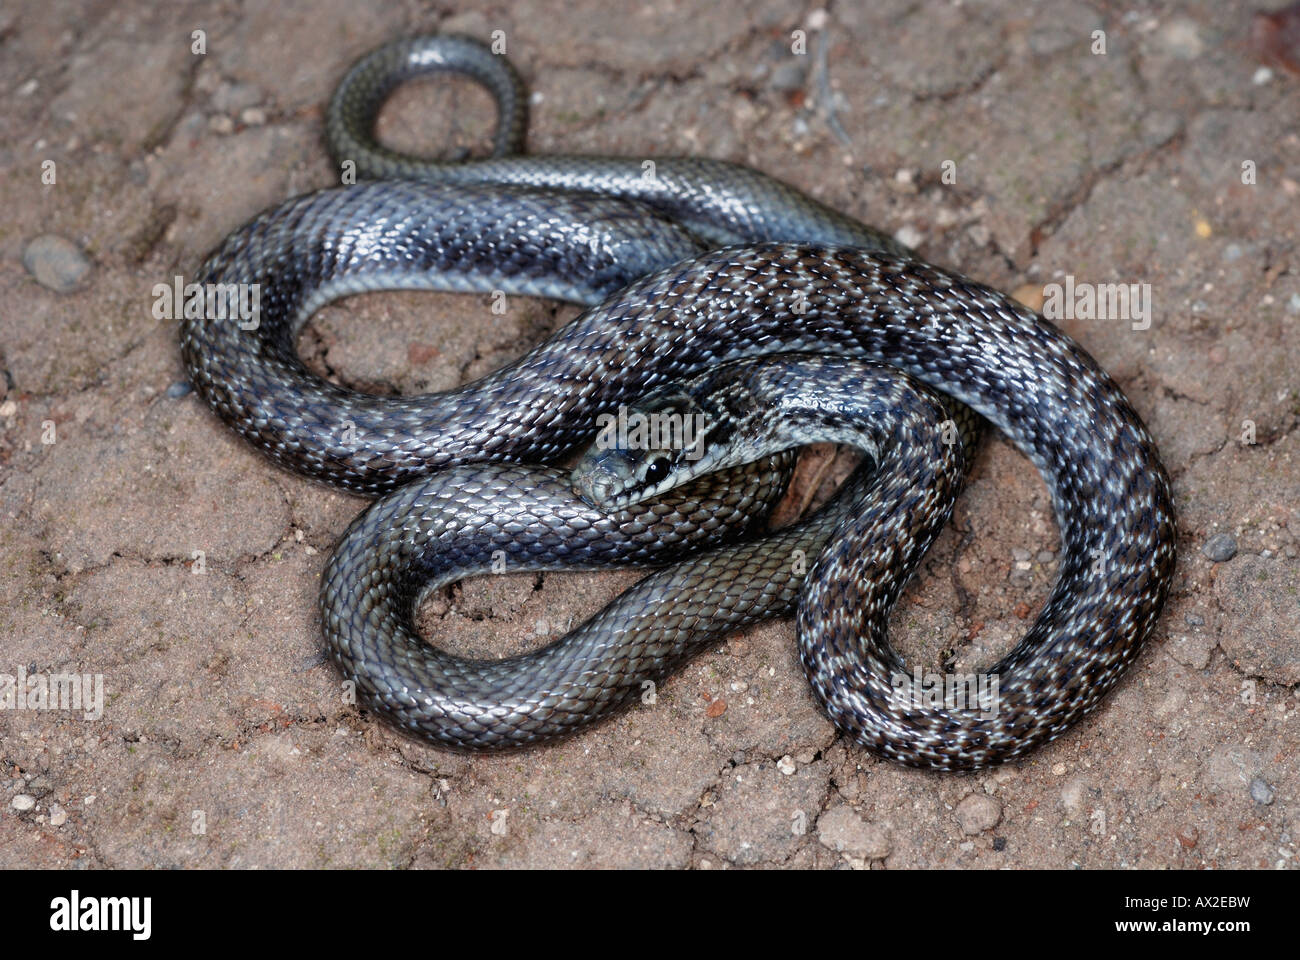 Indiano serpente liscio coronella brachyura . non rare velenosi. piccolo serpente slanciata che di solito cresce solo di 60-70cm in lunghezza. Foto Stock